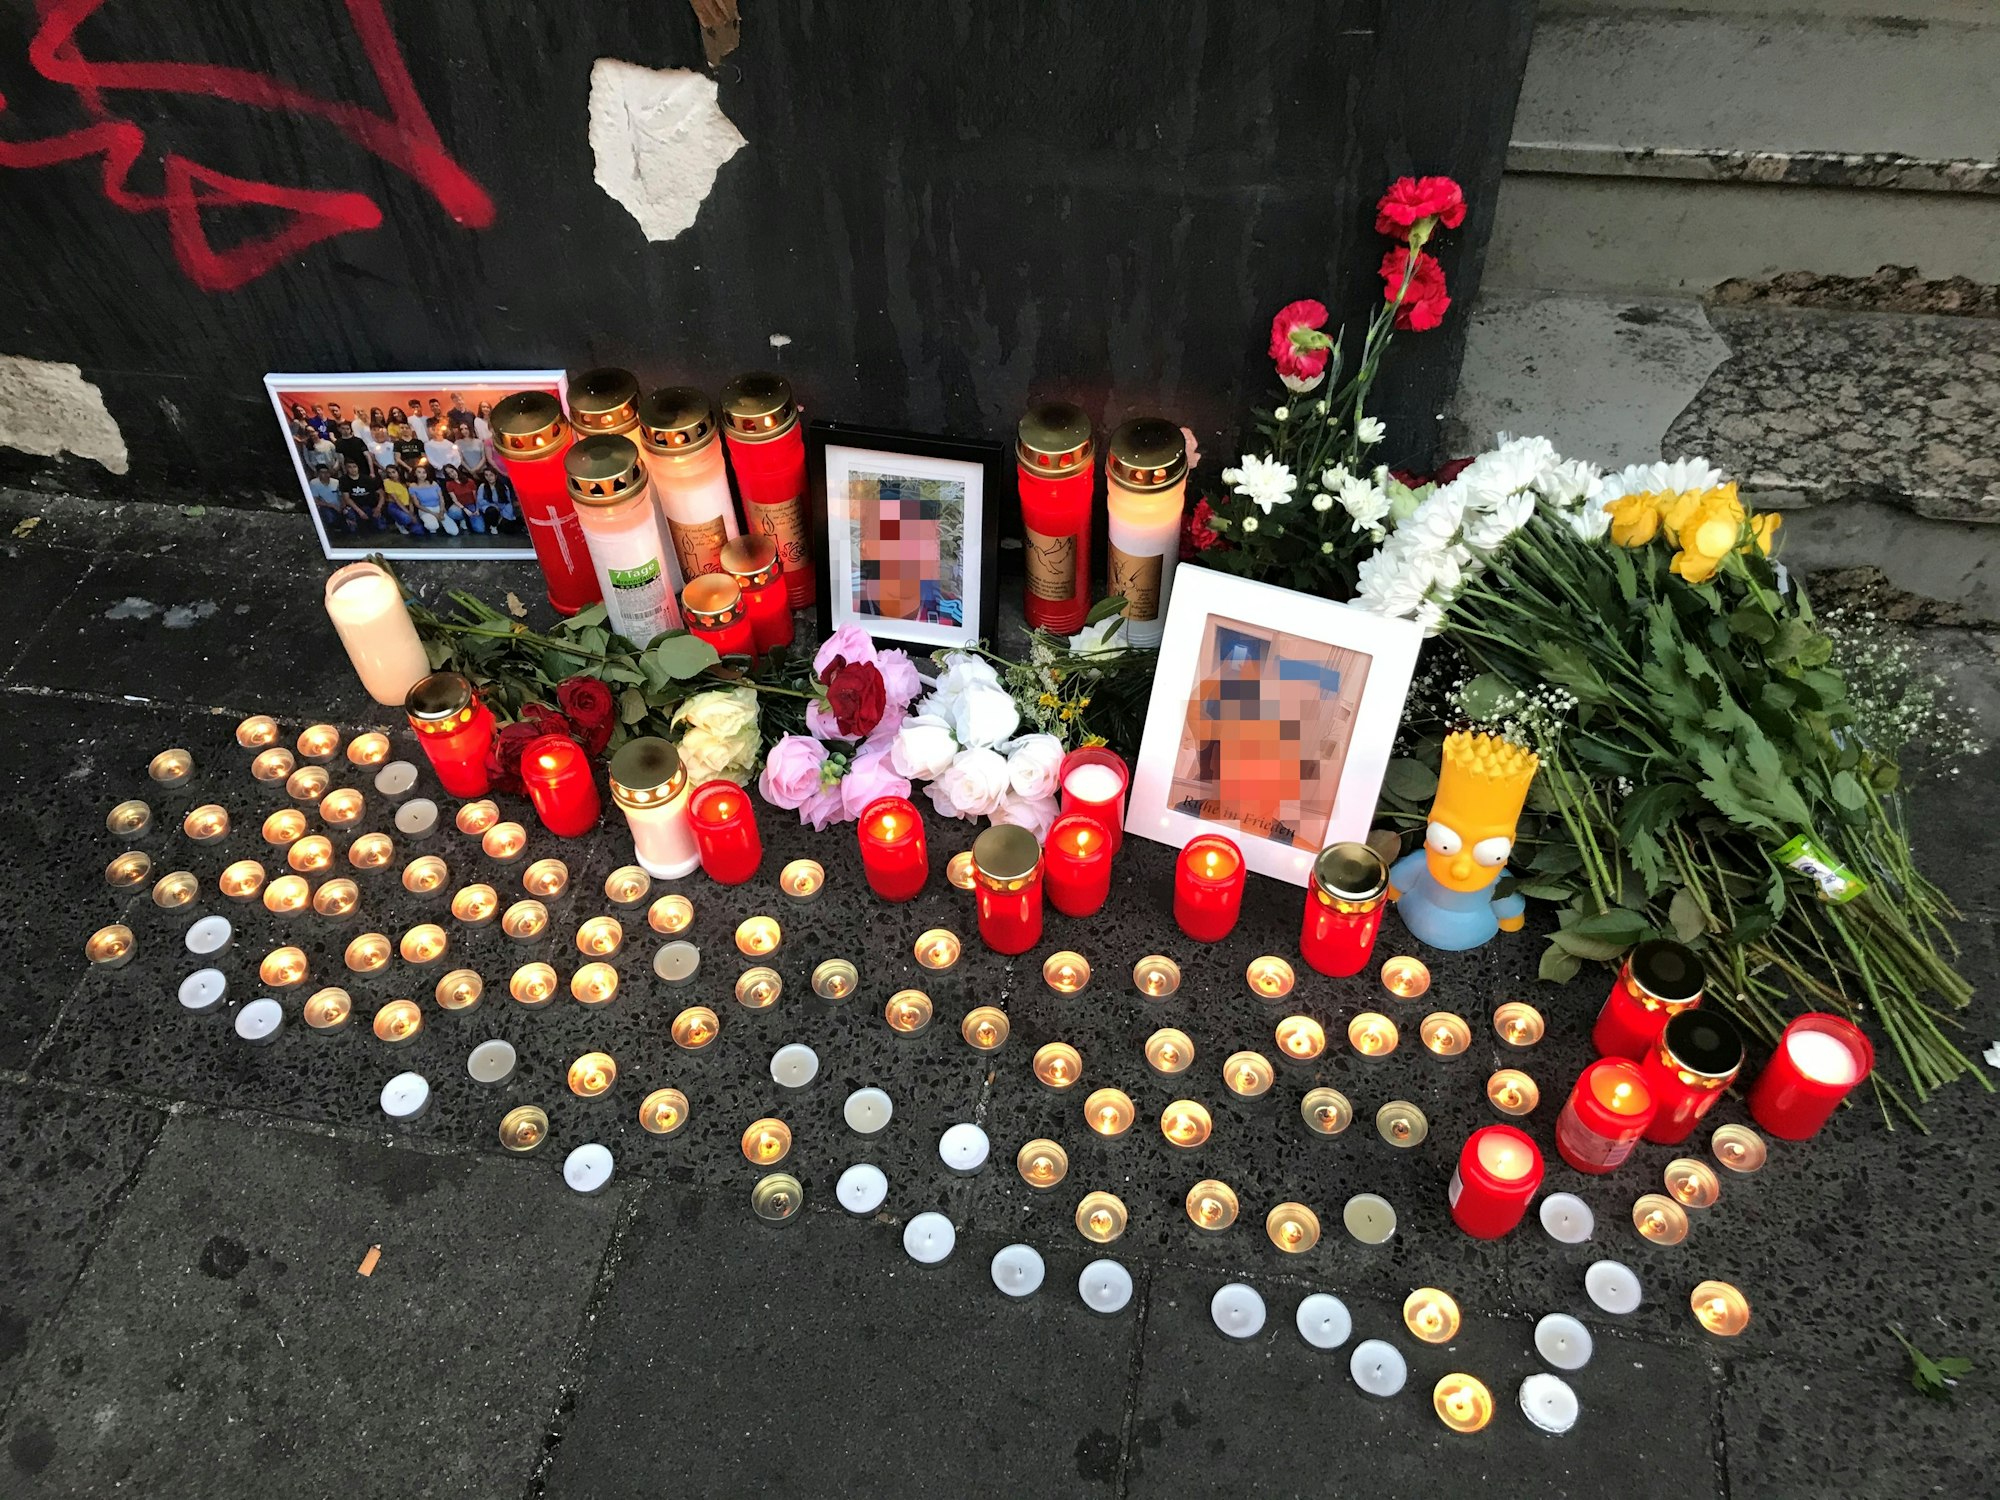 Auf dem Asphalt sind Kerzen und Blumen niedergelegt, auch Fotos des Opfers sind zu sehen.